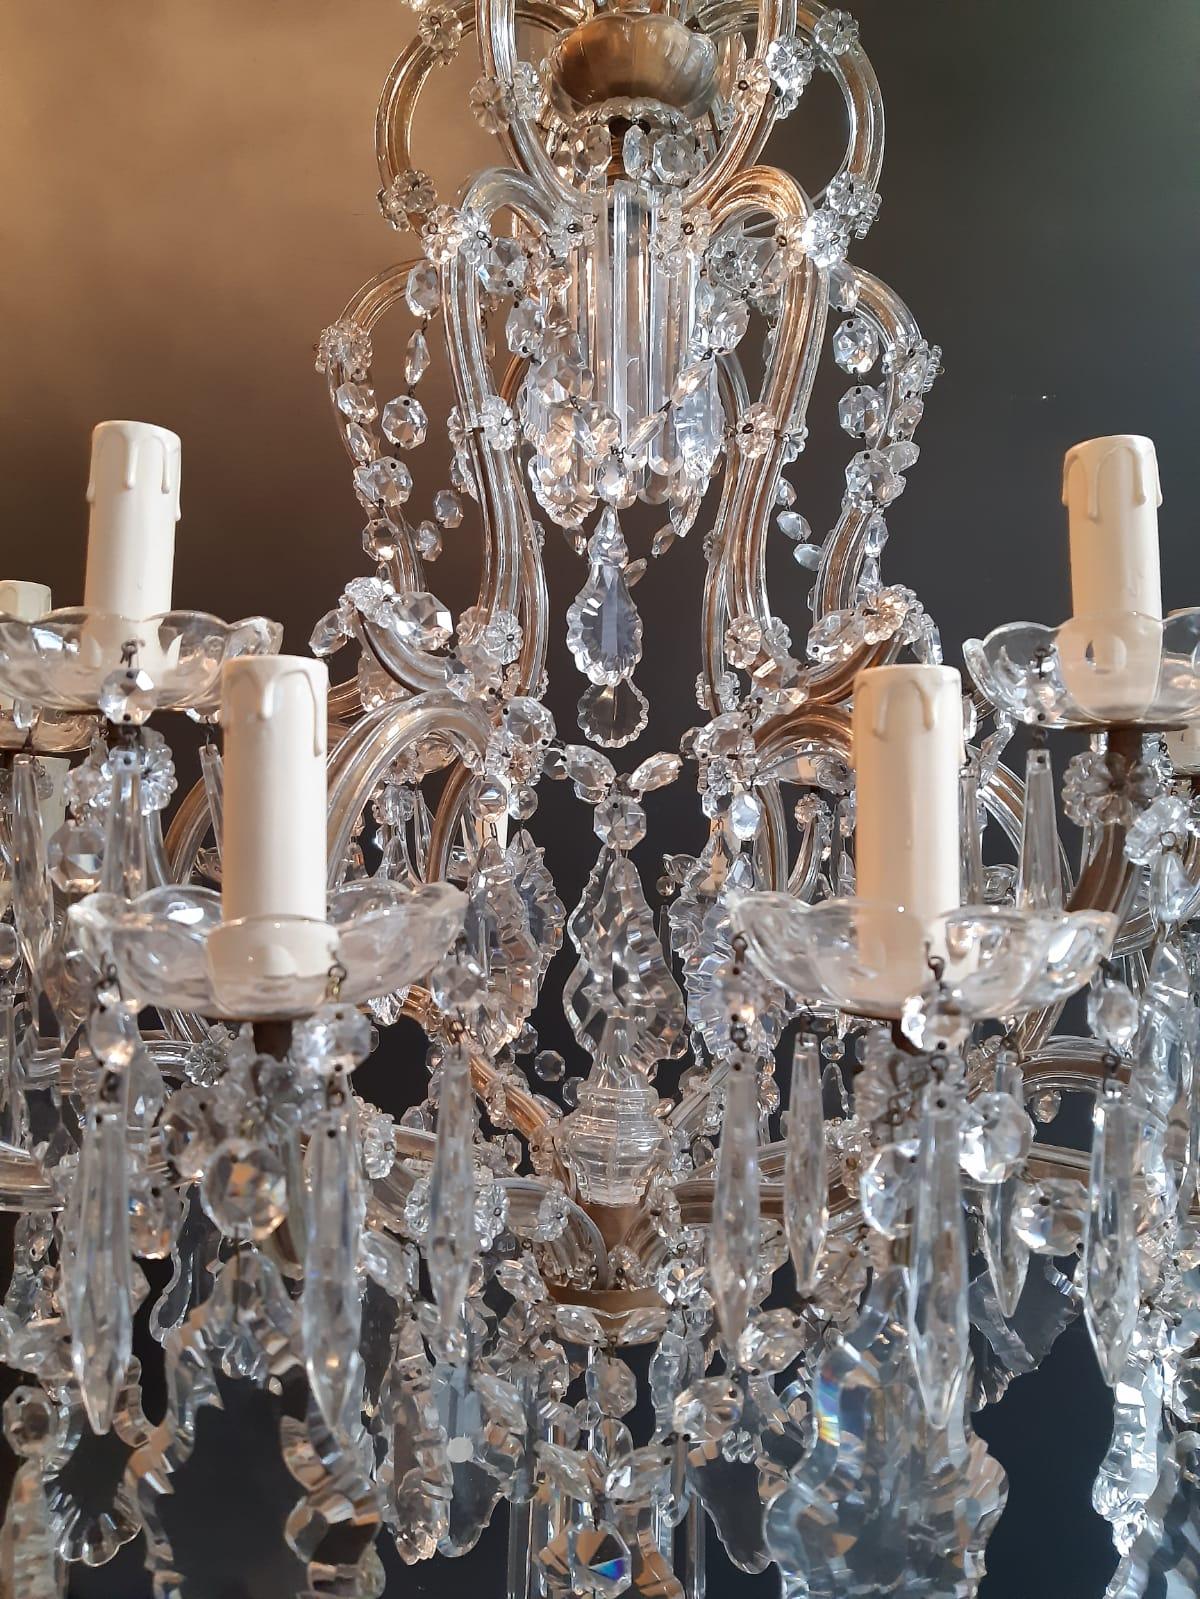 Baroque Nineteen-Light Maria Theresa Chandelier Antique Ceiling Lamp Lustre Art Nouveau